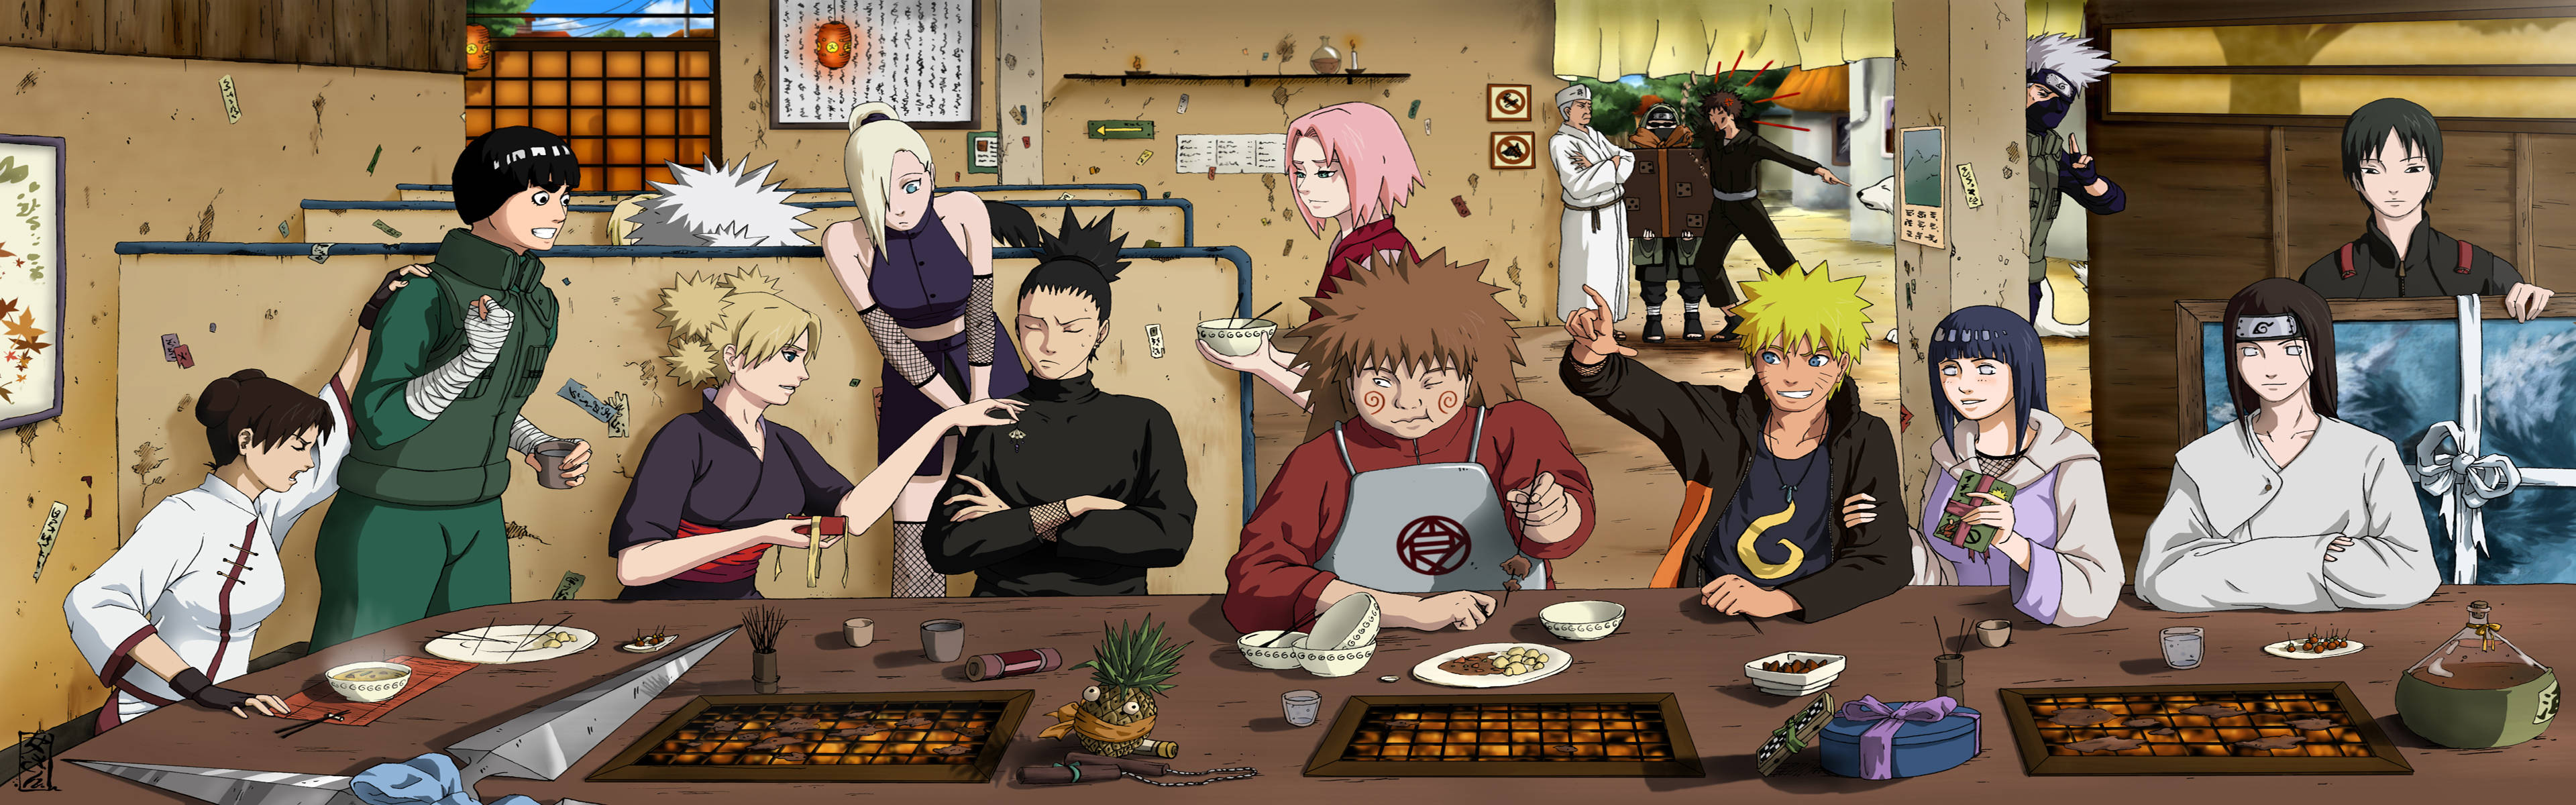 Shikamaru And Friends Eating Background